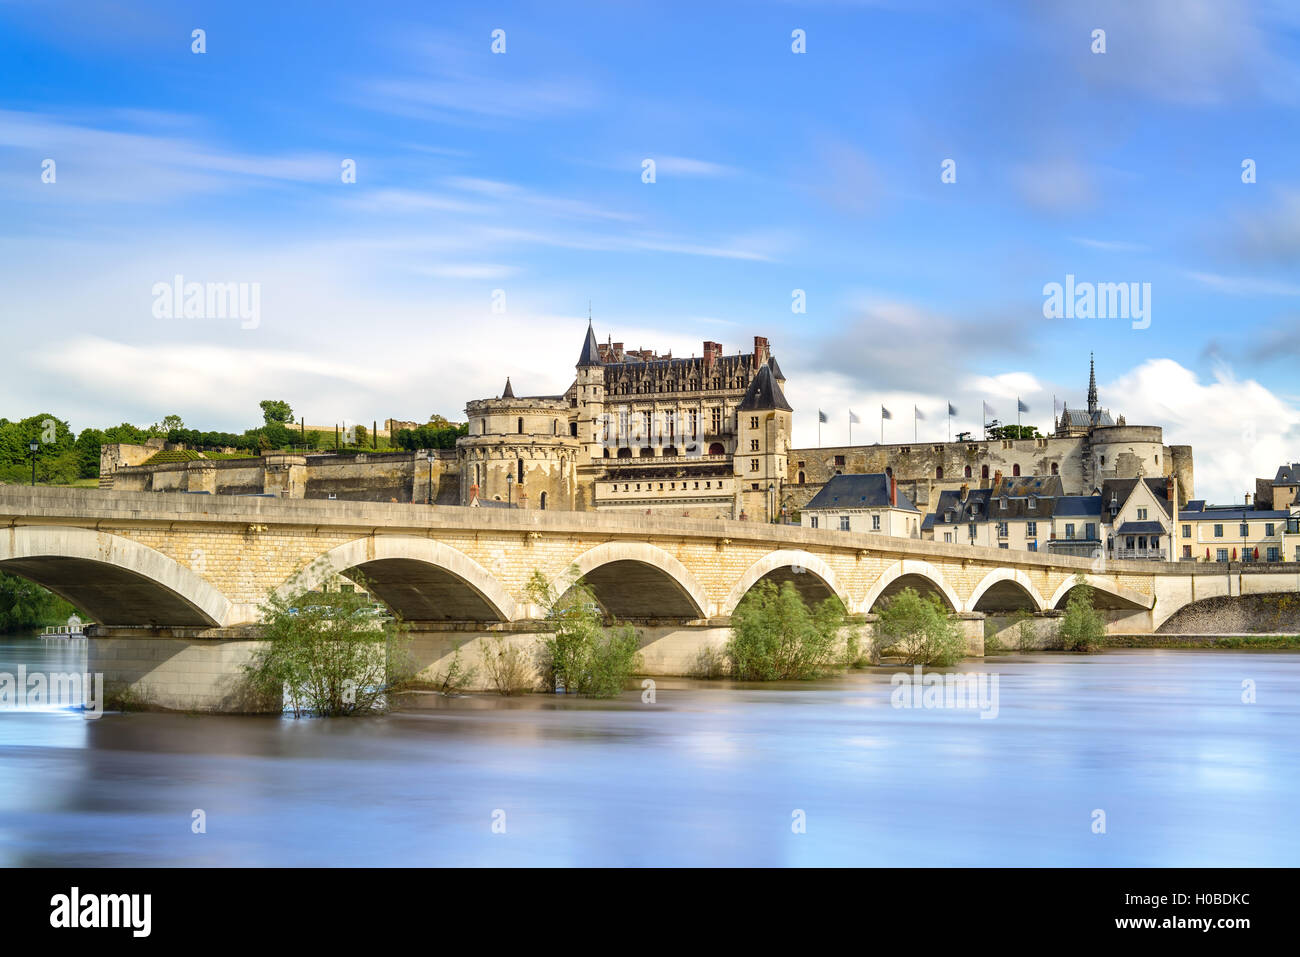 Amboise château médiéval ou chateau et pont sur la Loire. La France, l'Europe. Site de l'Unesco. Banque D'Images